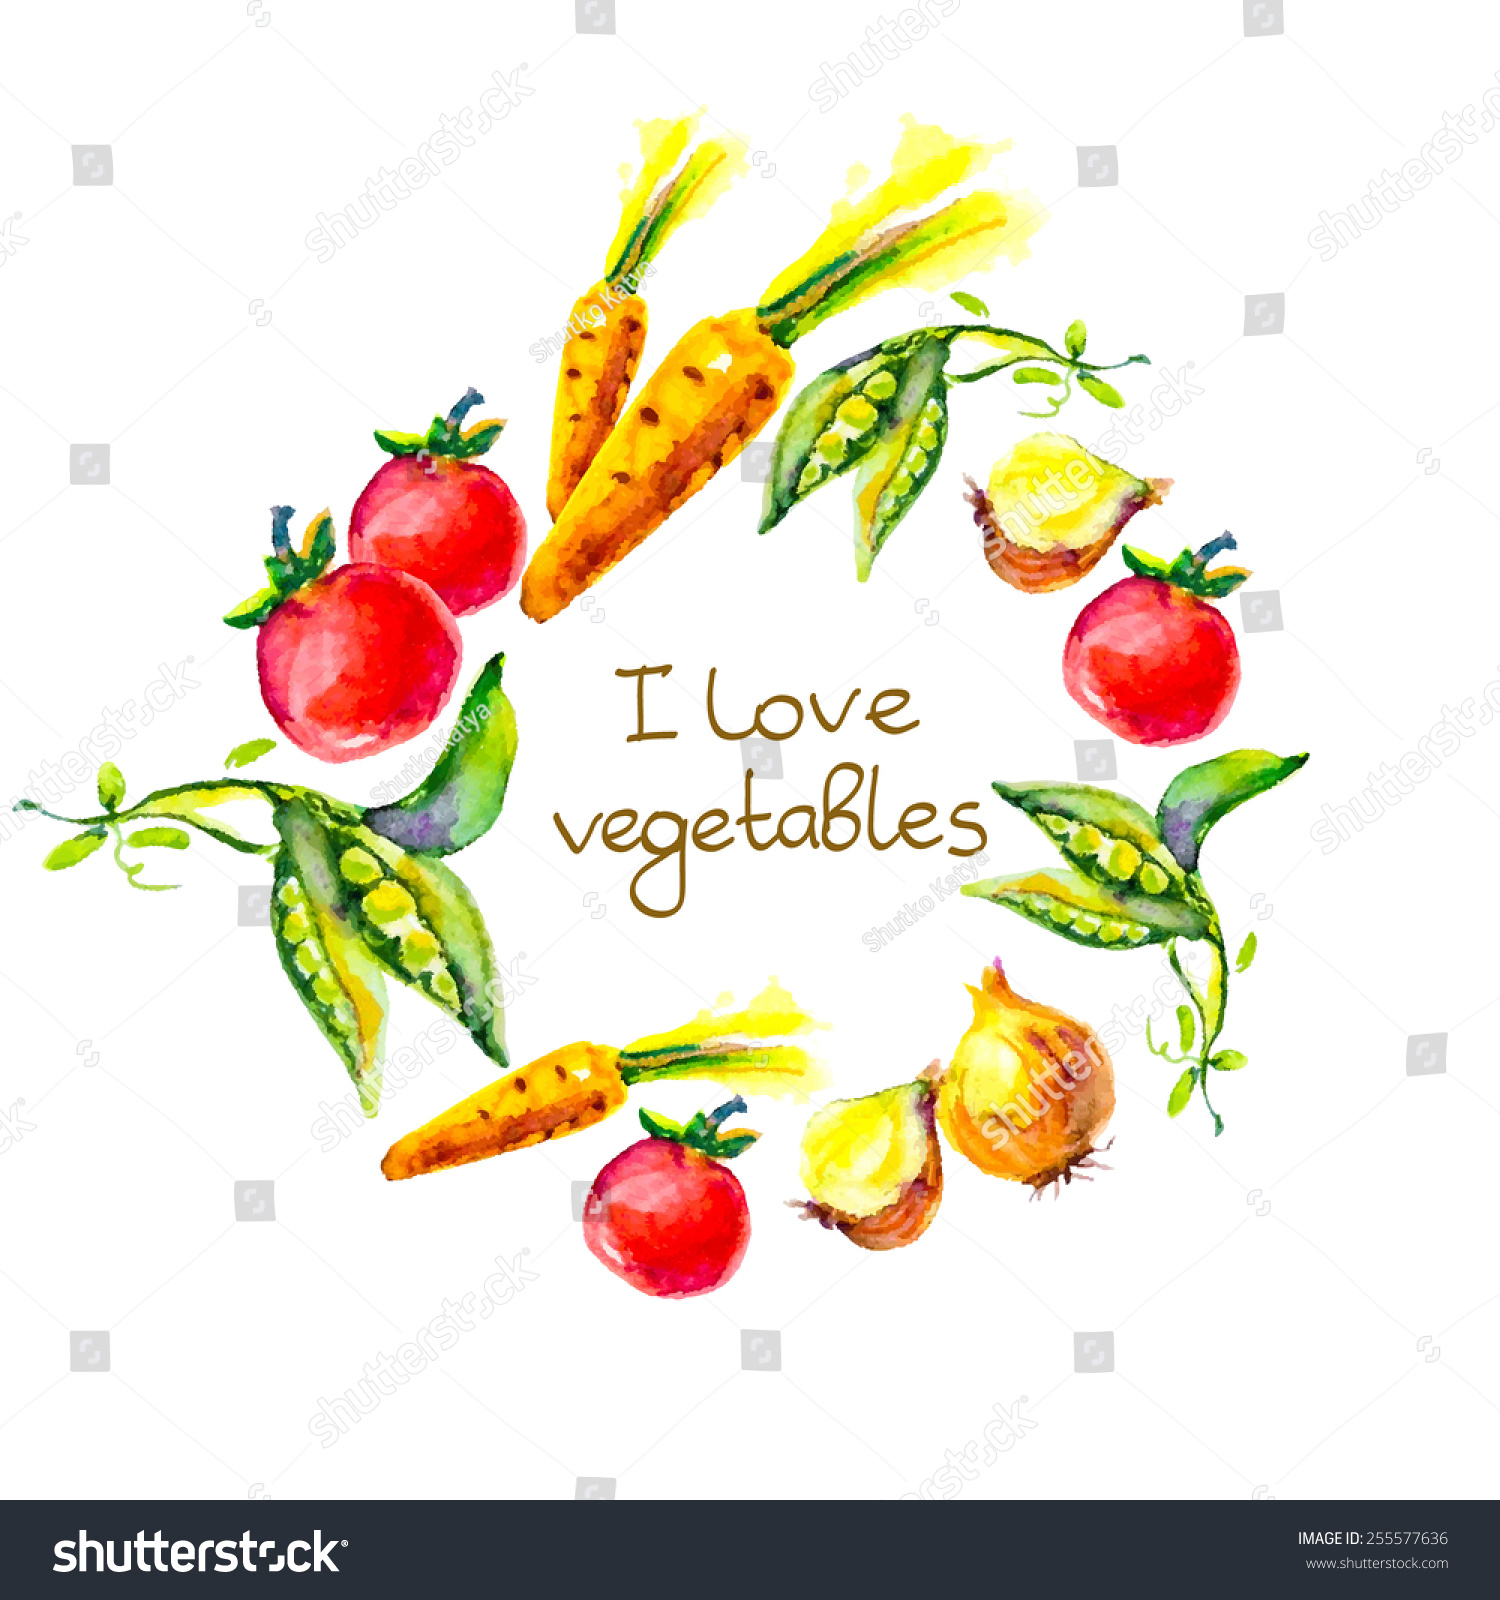 watercolor vegetables Ã¢Â?Â? I love vegetables, circle frame #255577636